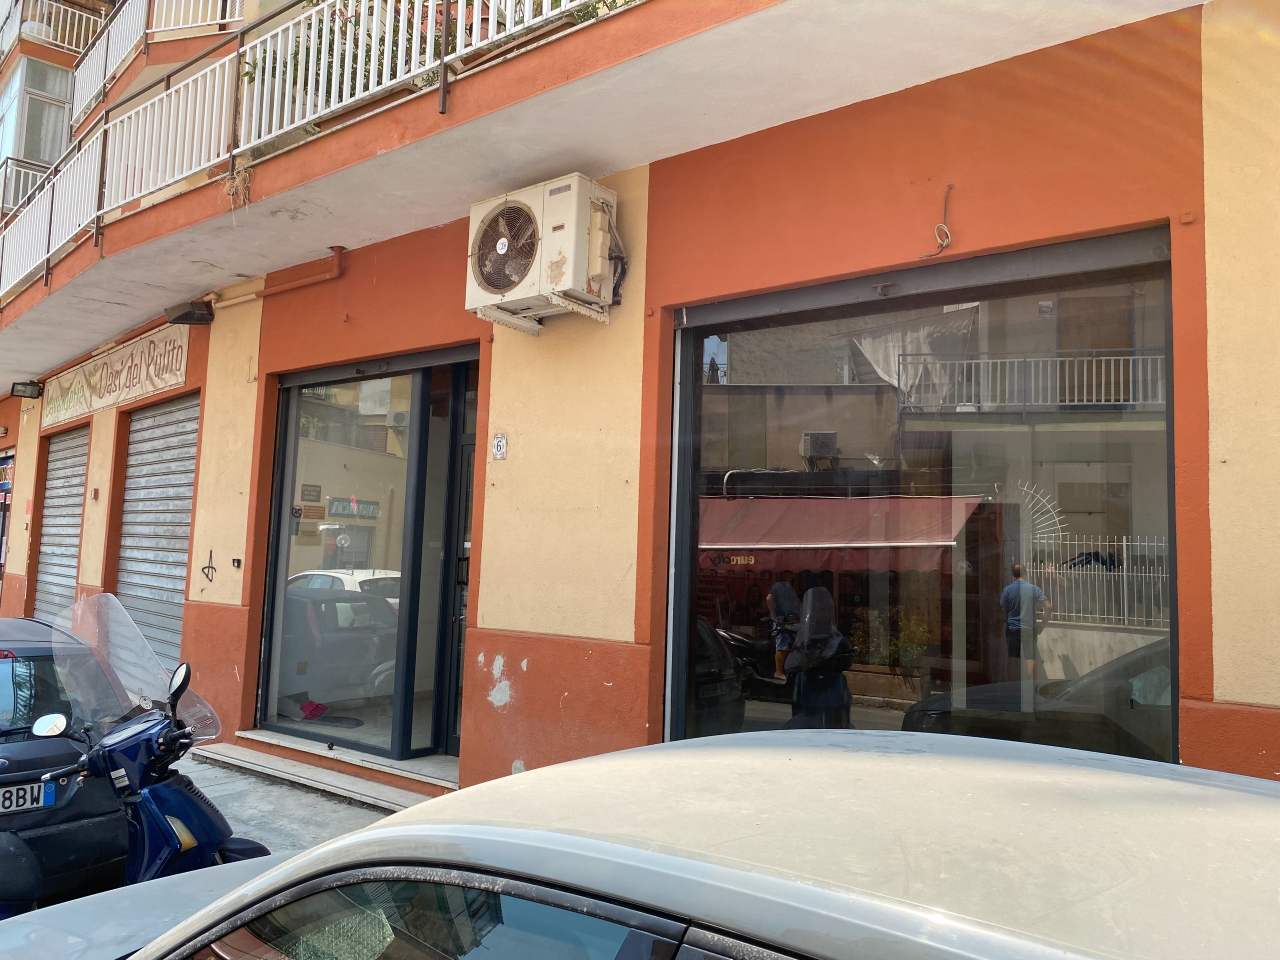 Negozio in vendita a Palermo